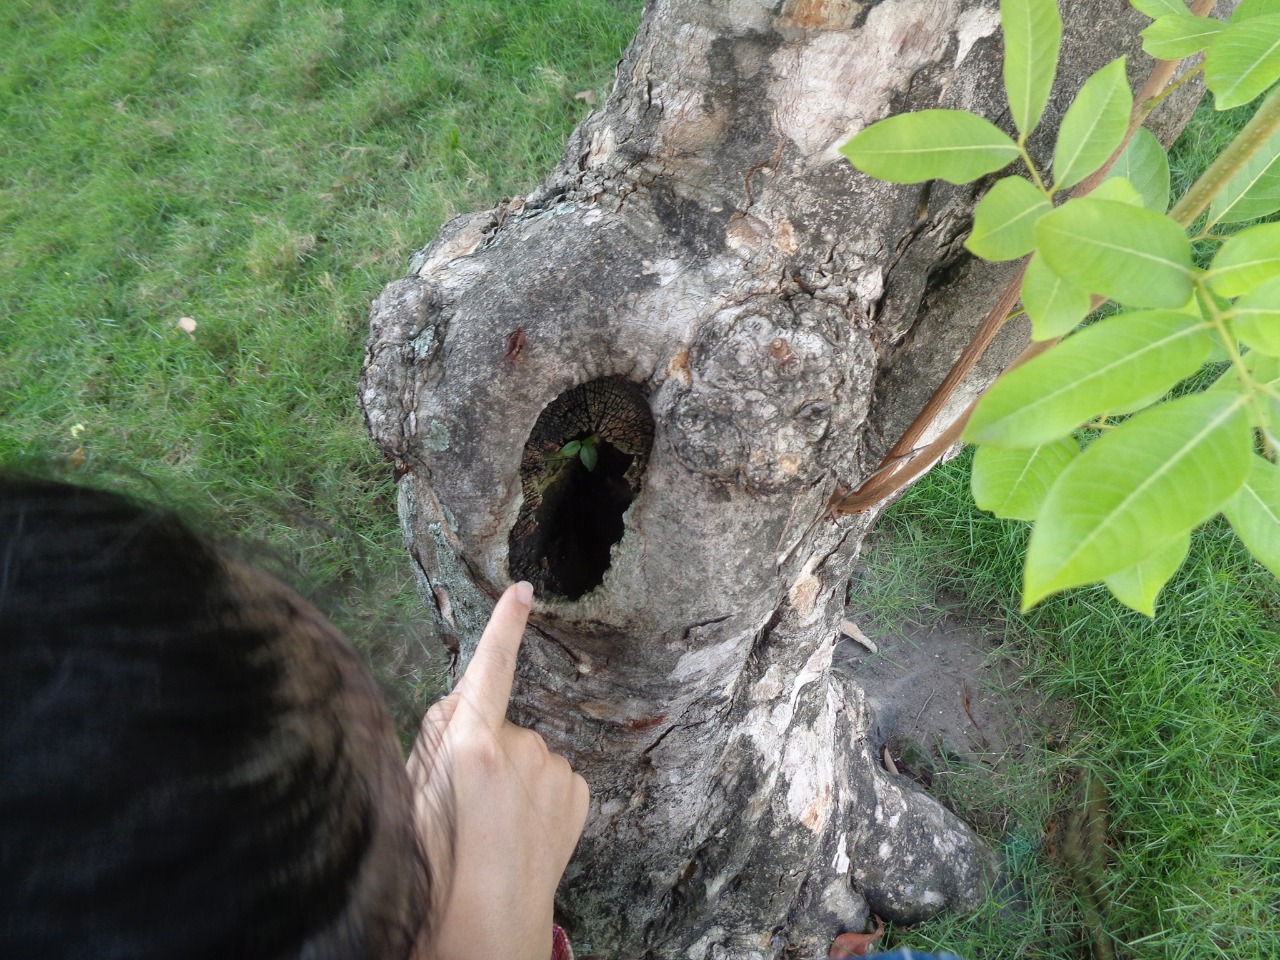 Trên thân cây có kiến, sâu, nhện và chim nữa. Chúng ta là một phần của thế giới tự nhiên.